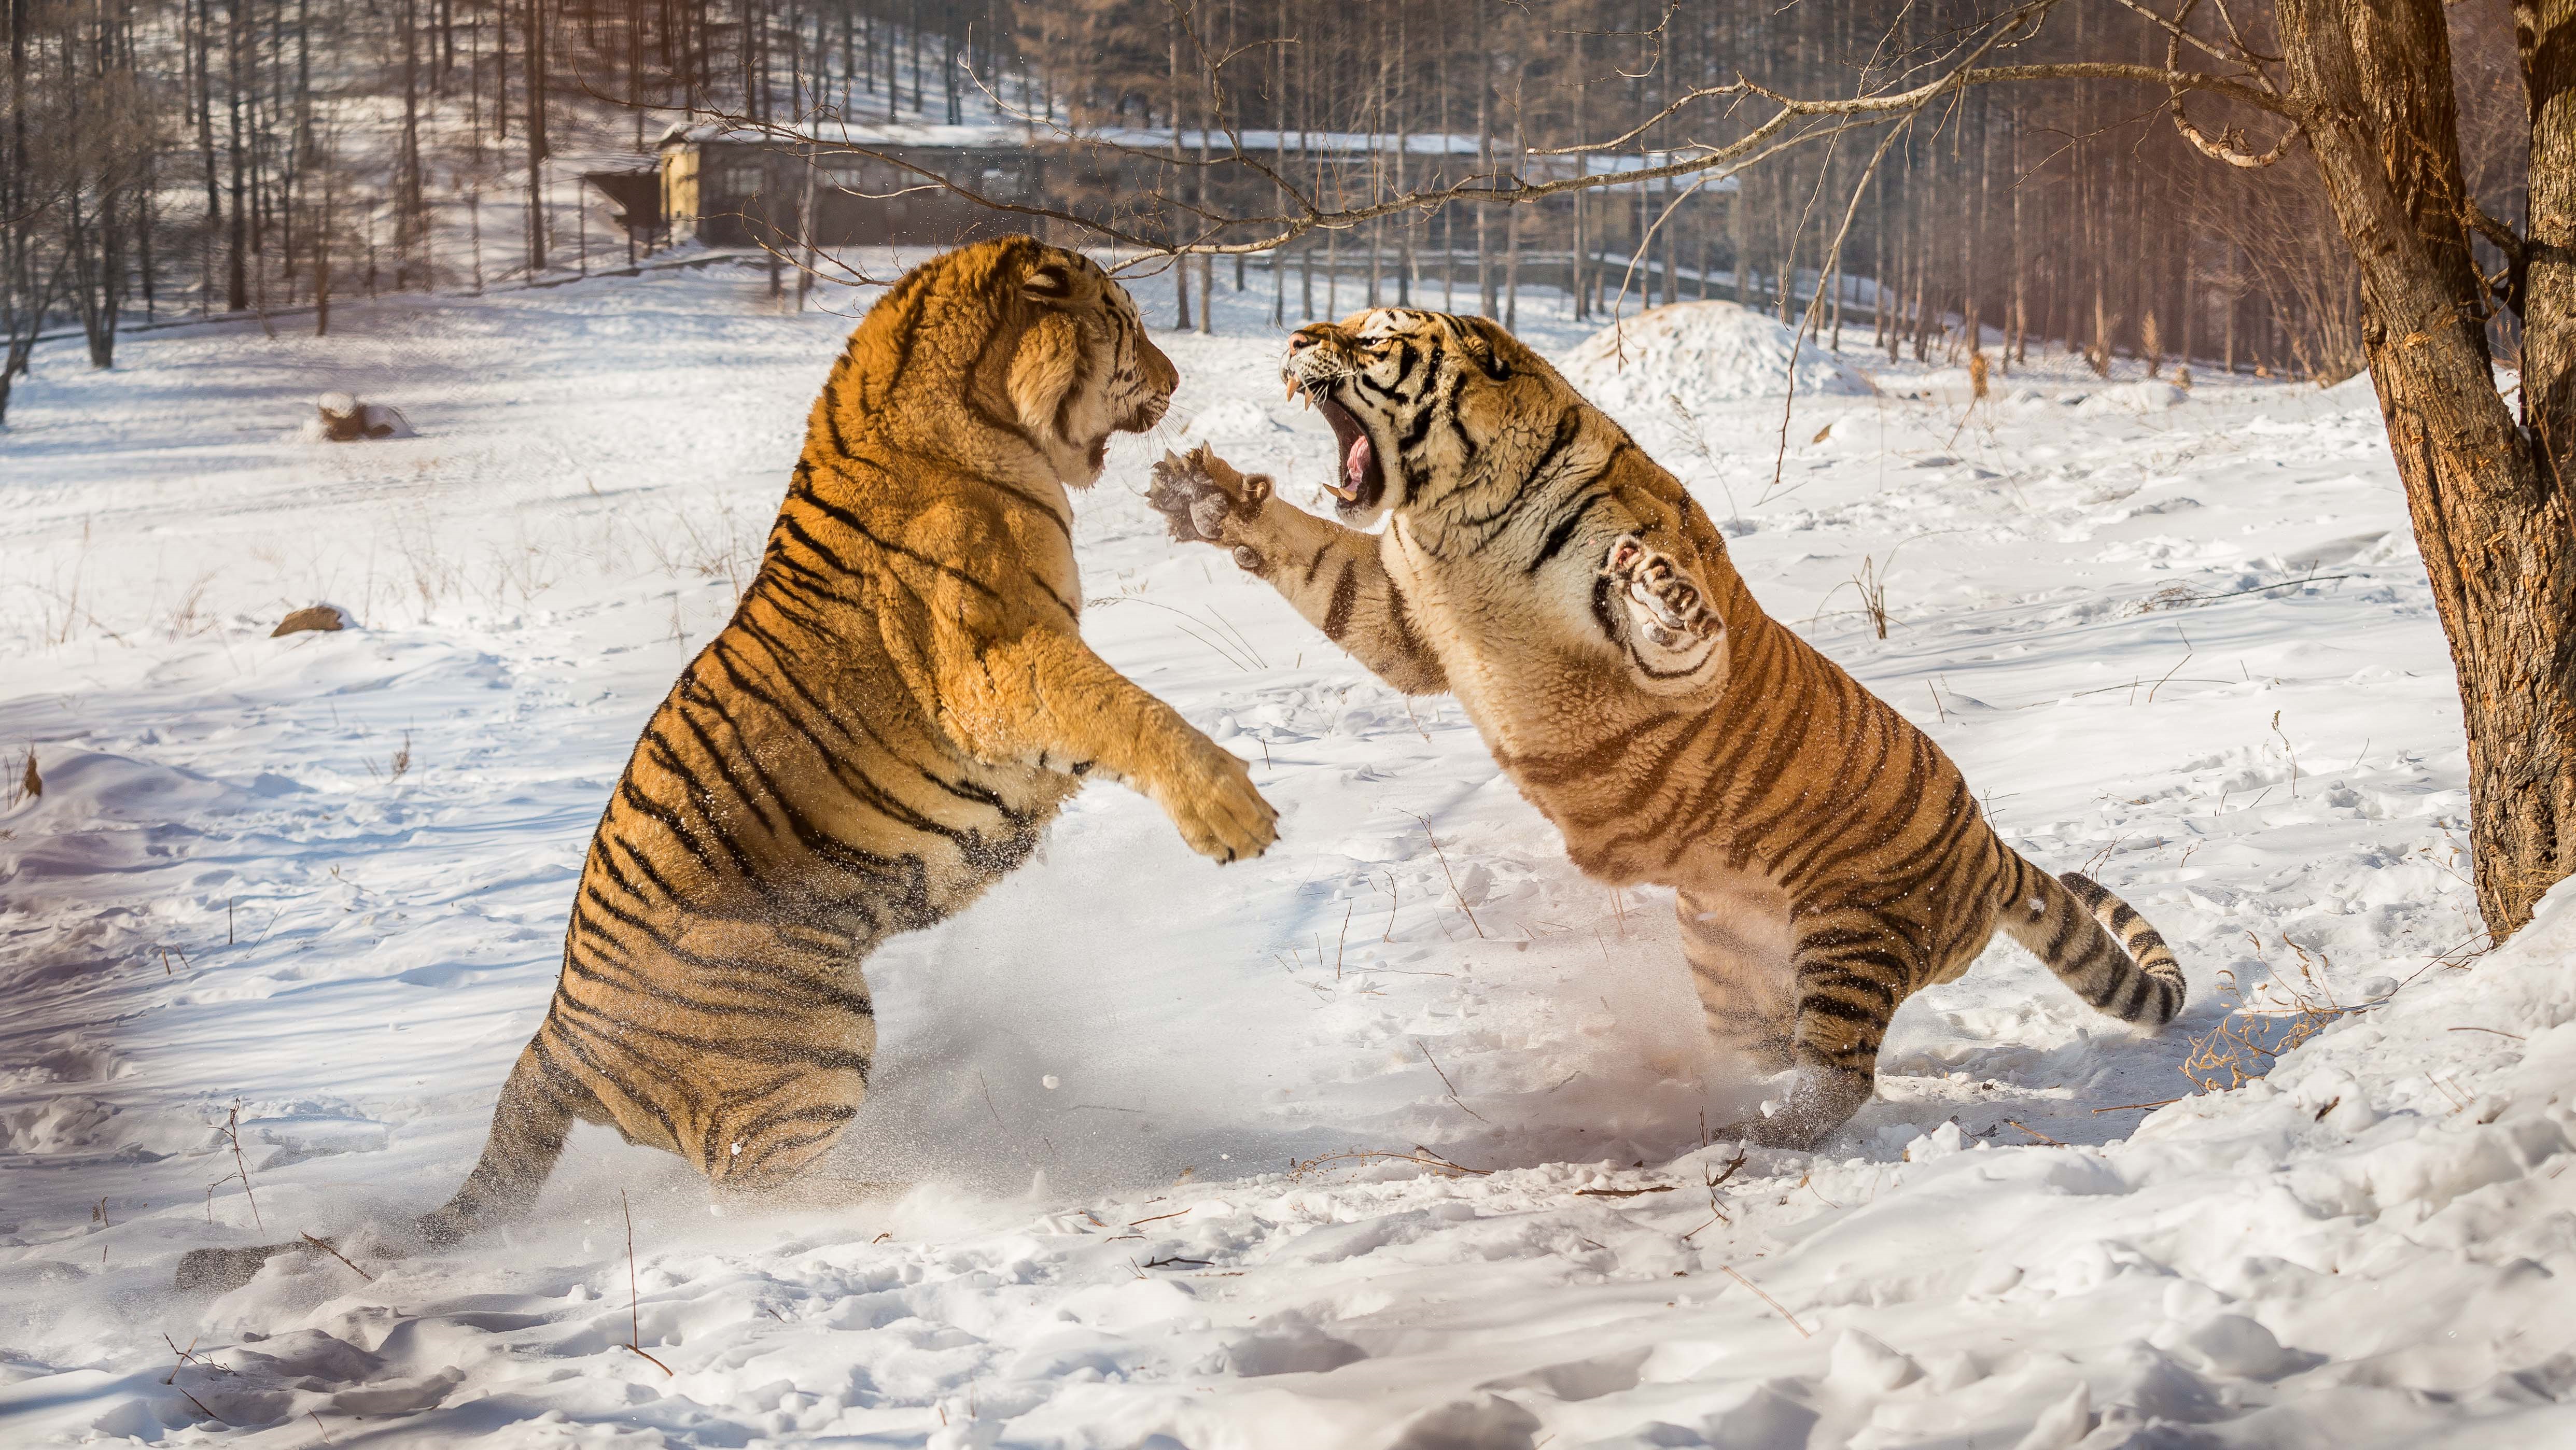 Tiger fight